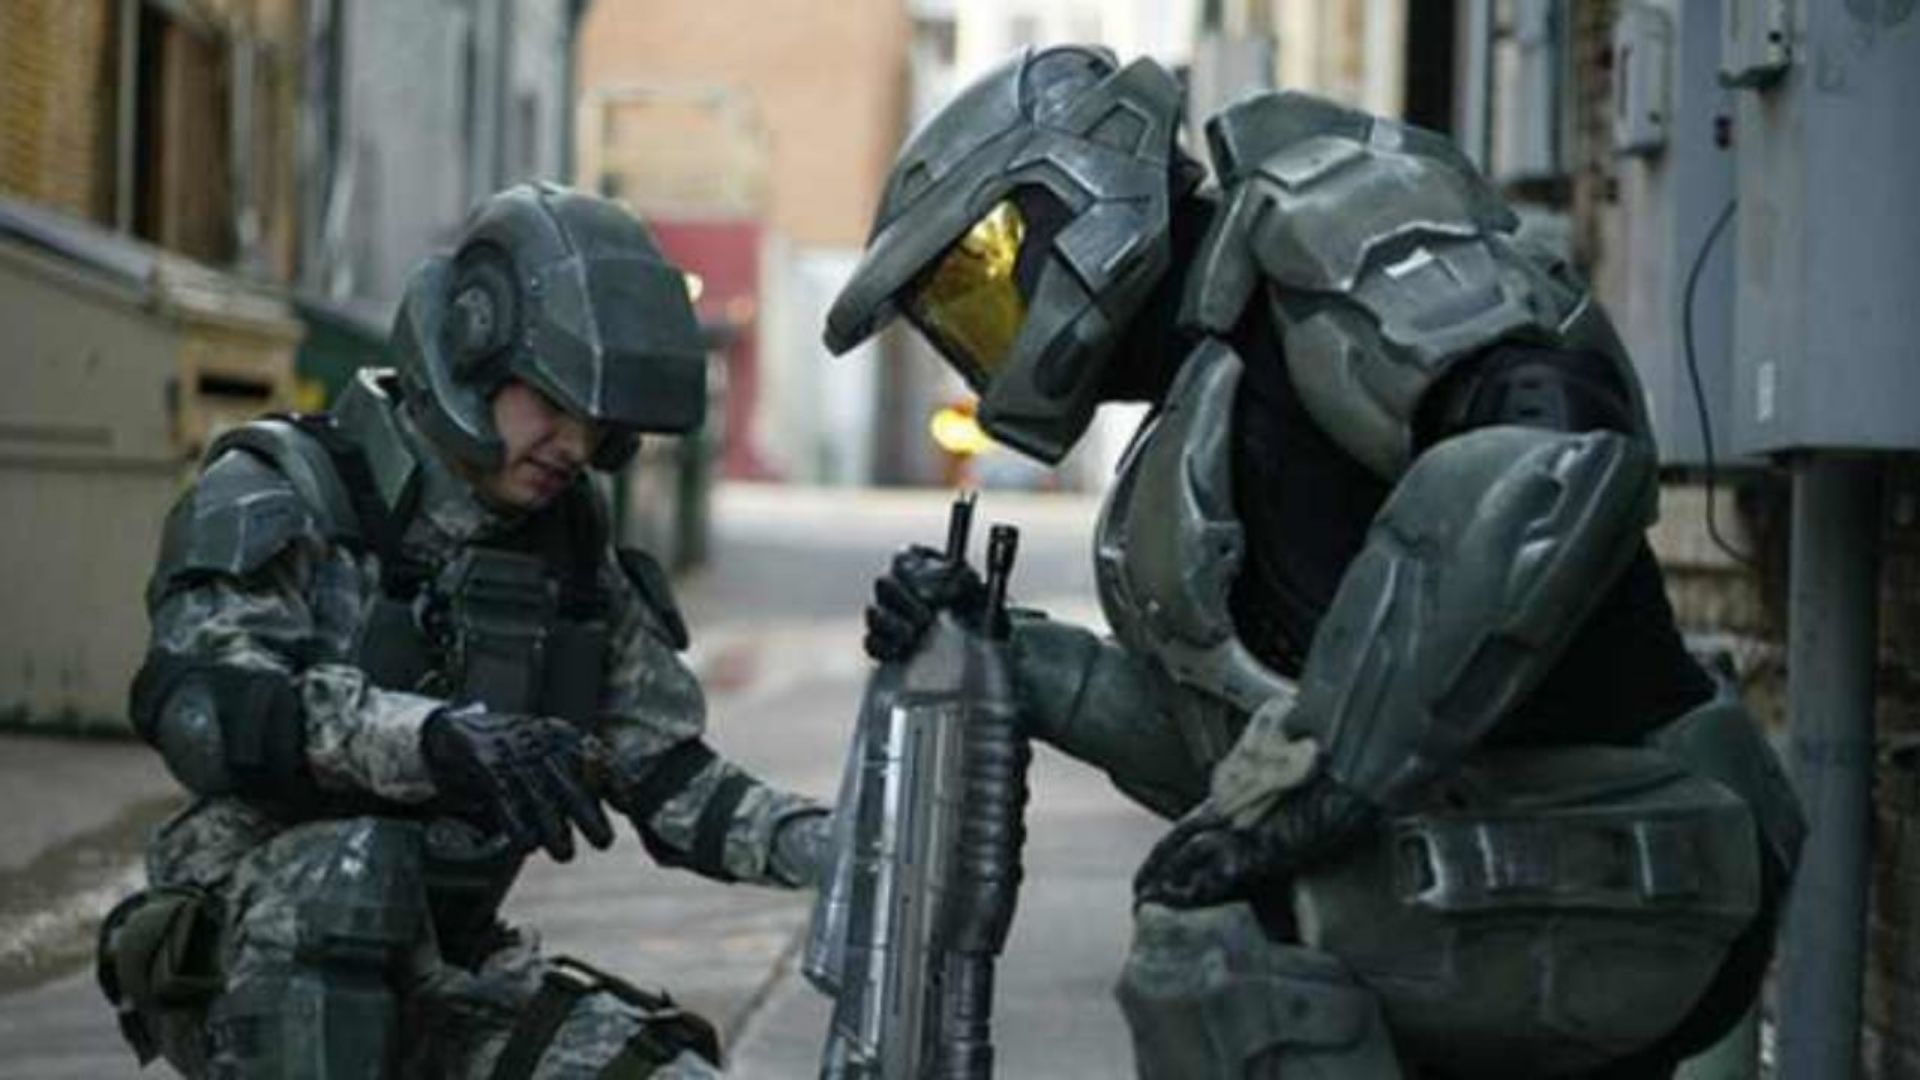 Halo: Série de TV é renovada para a temporada 2